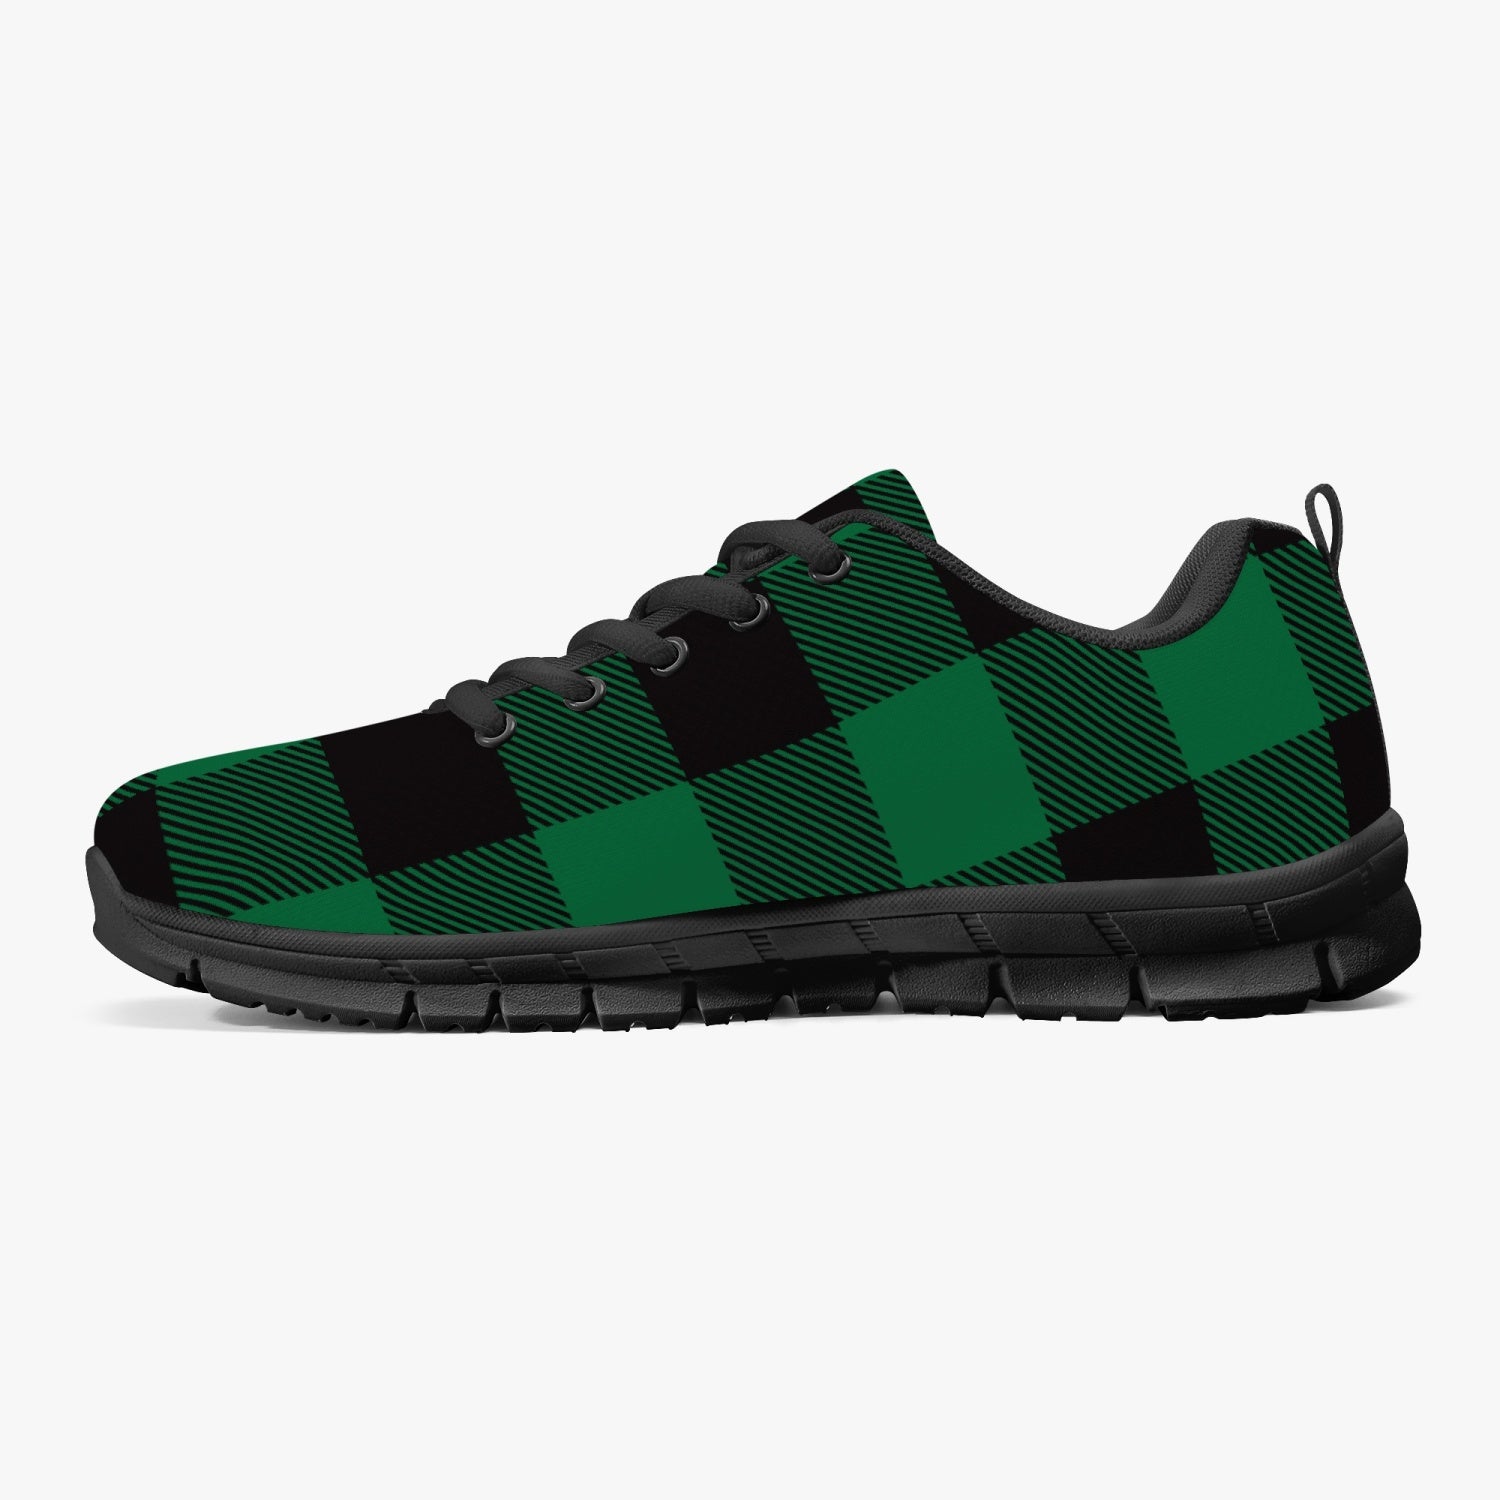 Green Lumberjack Plaid Sneakers